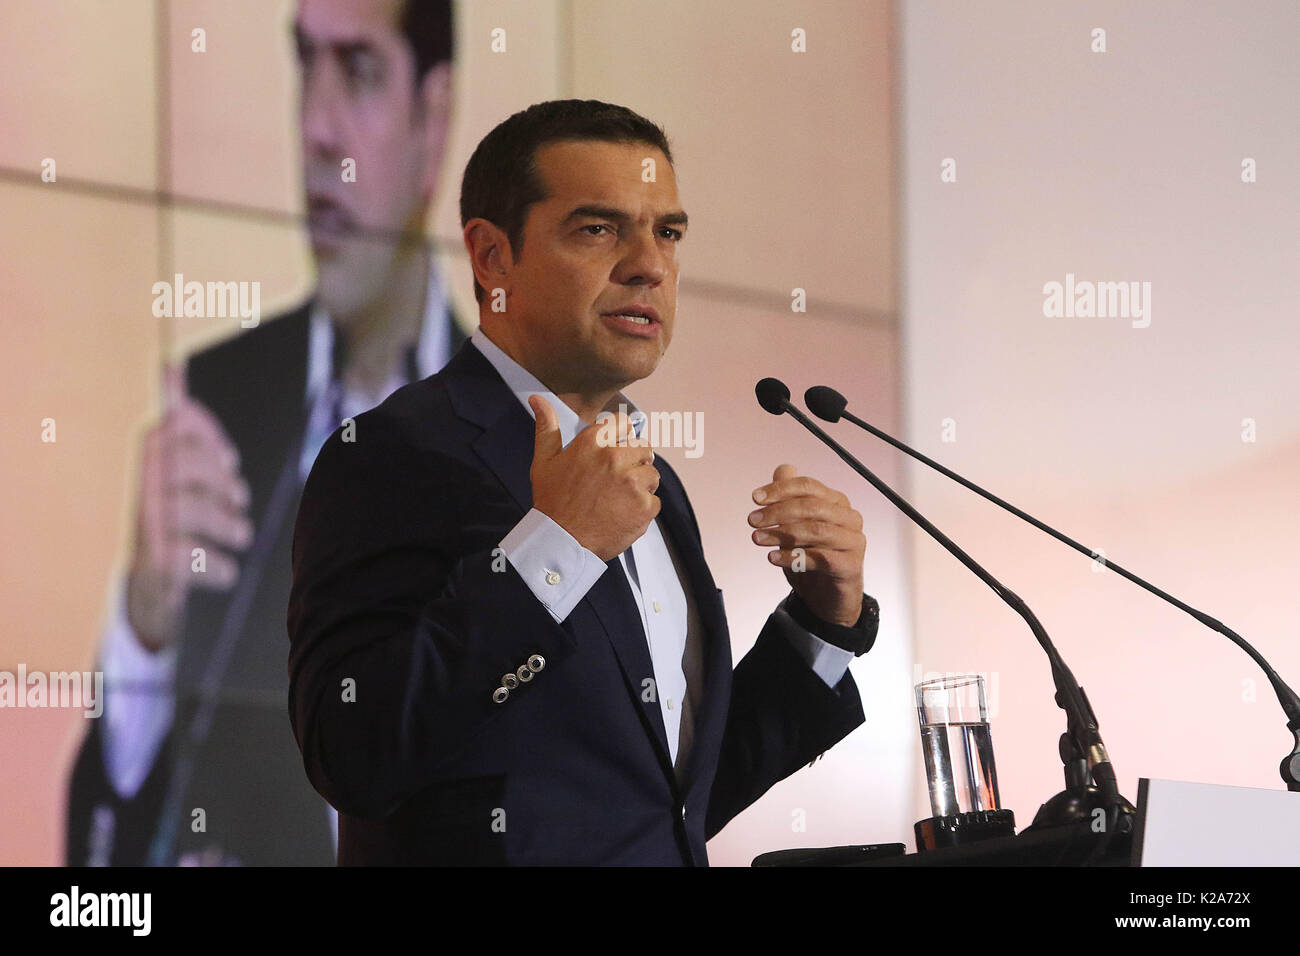 Il primo ministro Alexis Tsipras risolve il pubblico durante un evento per la riforma del settore pubblico presso il Museo Benaki. Foto Stock